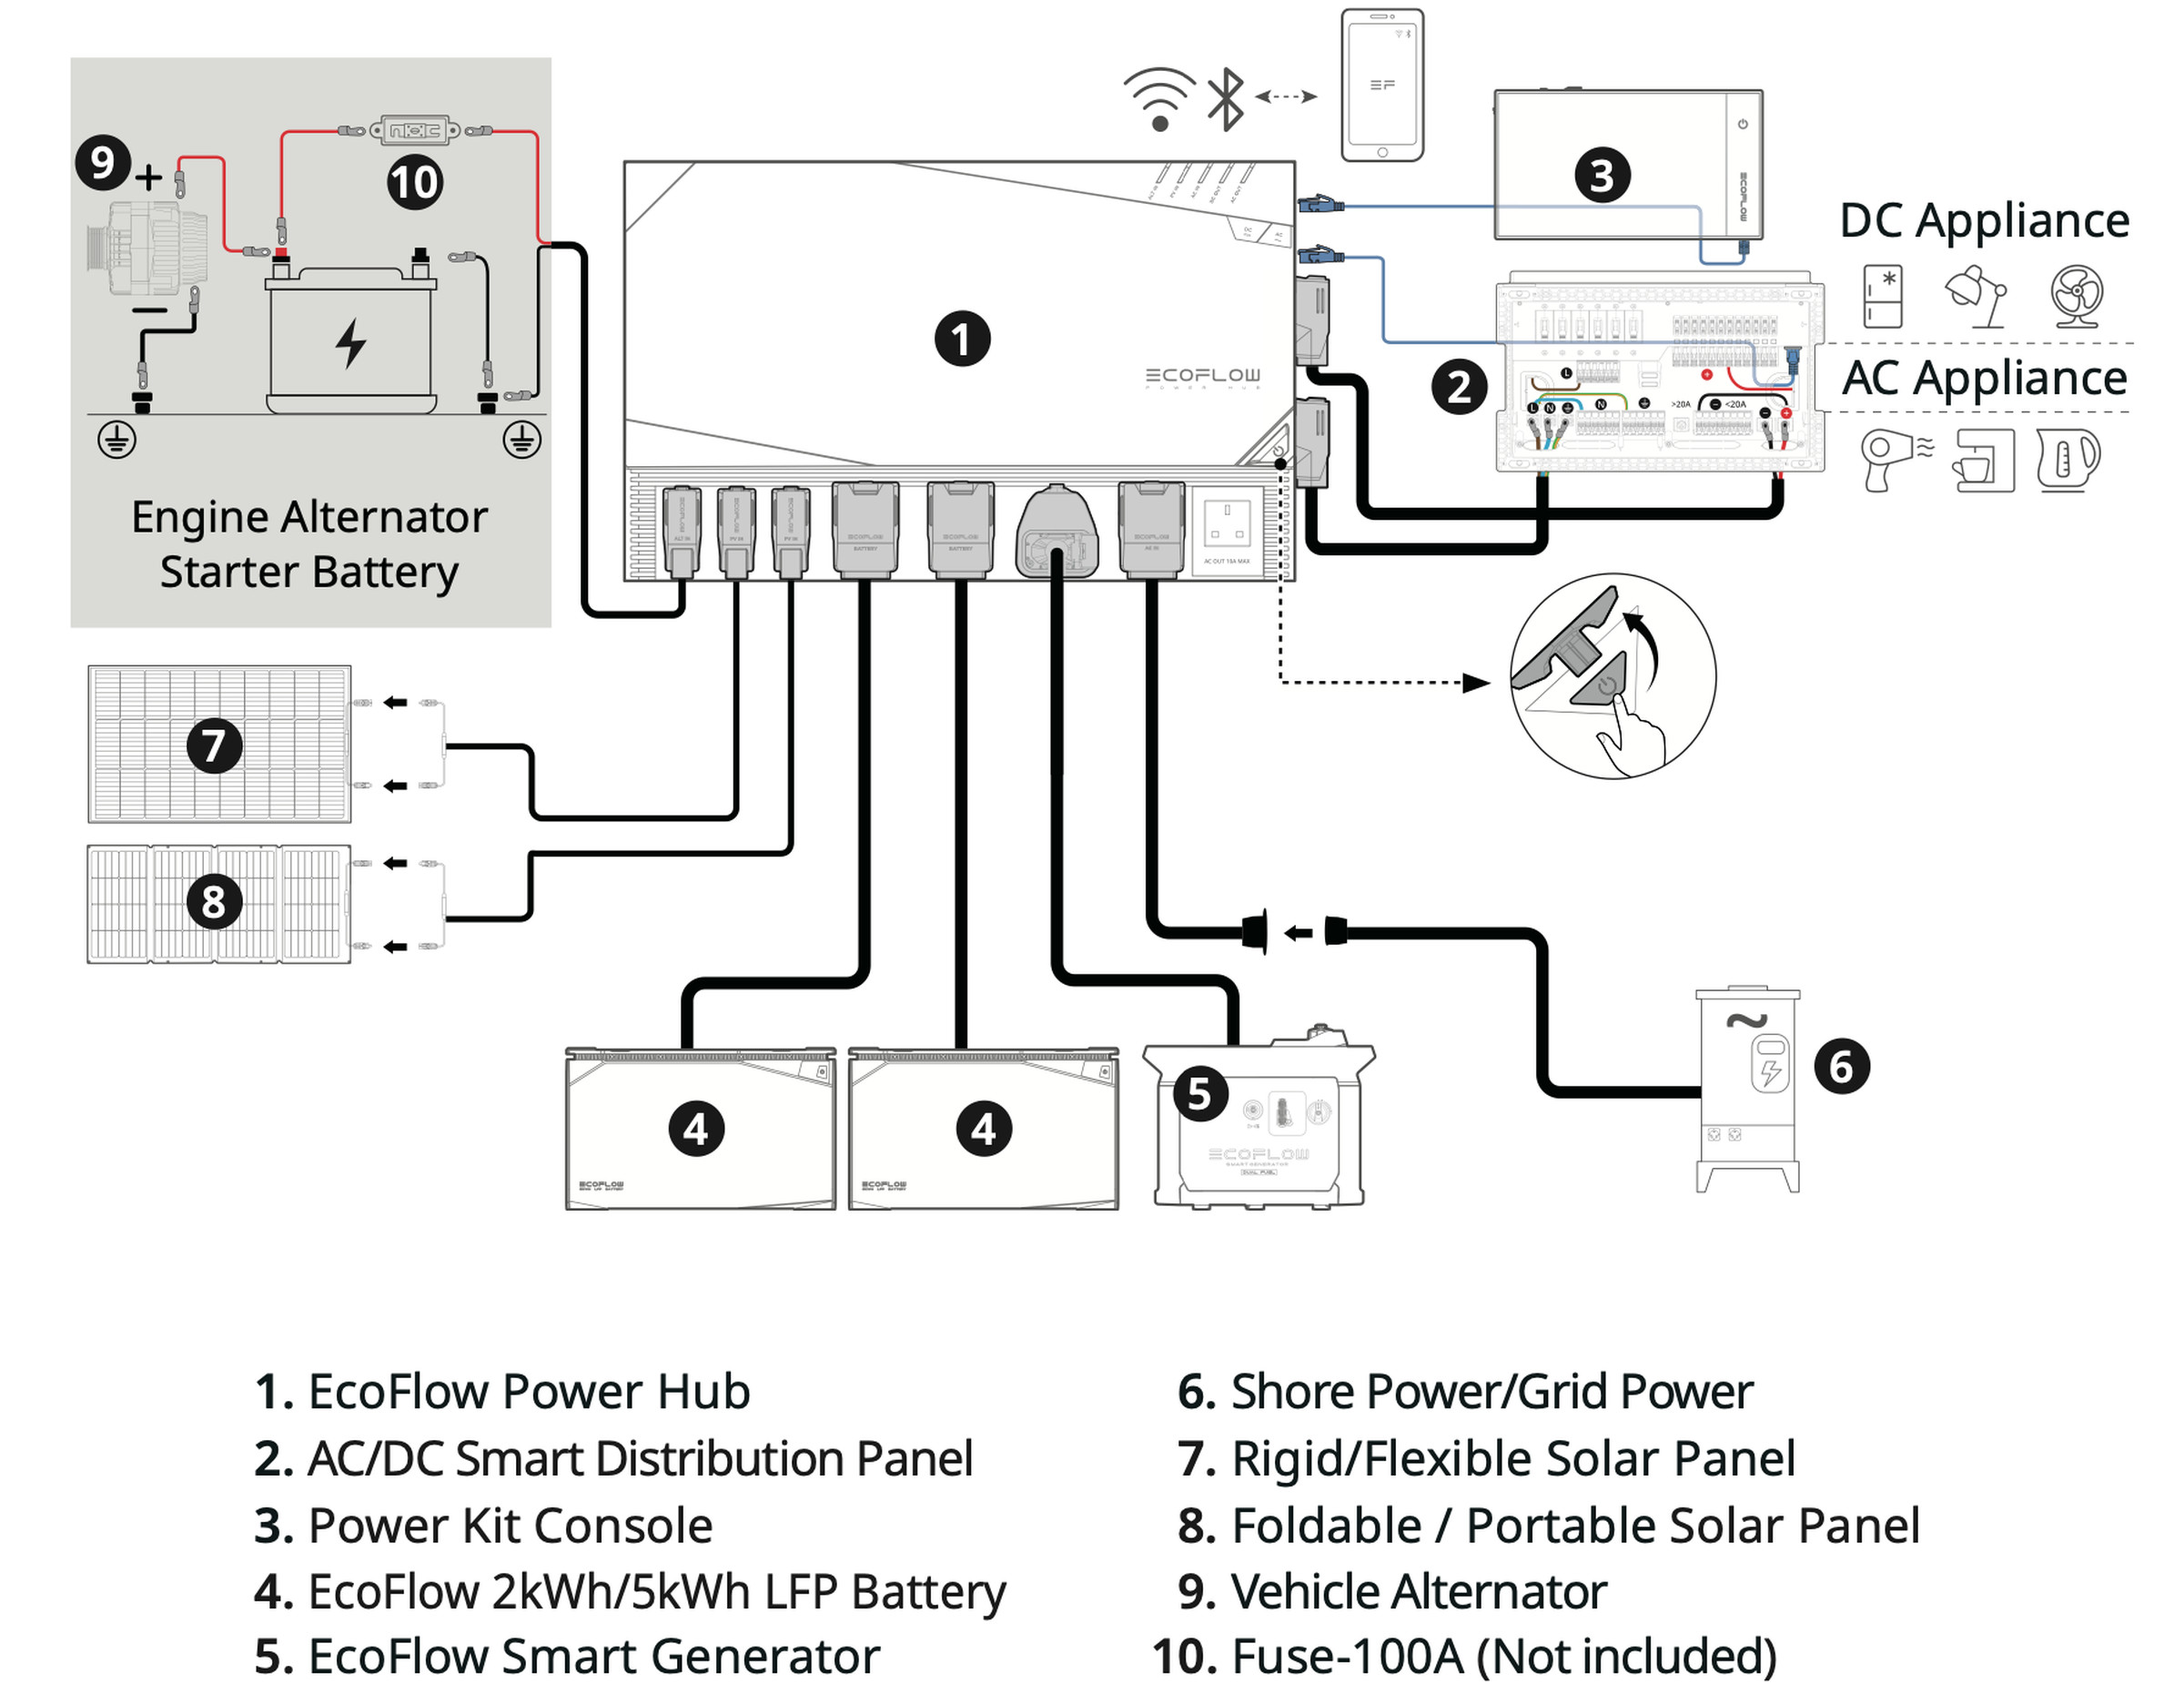 Il Power Hub è il punto centrale di connettività. L'EcoFlow Smart Generator (5) può anche essere una terza batteria, come nel caso di Fabian.